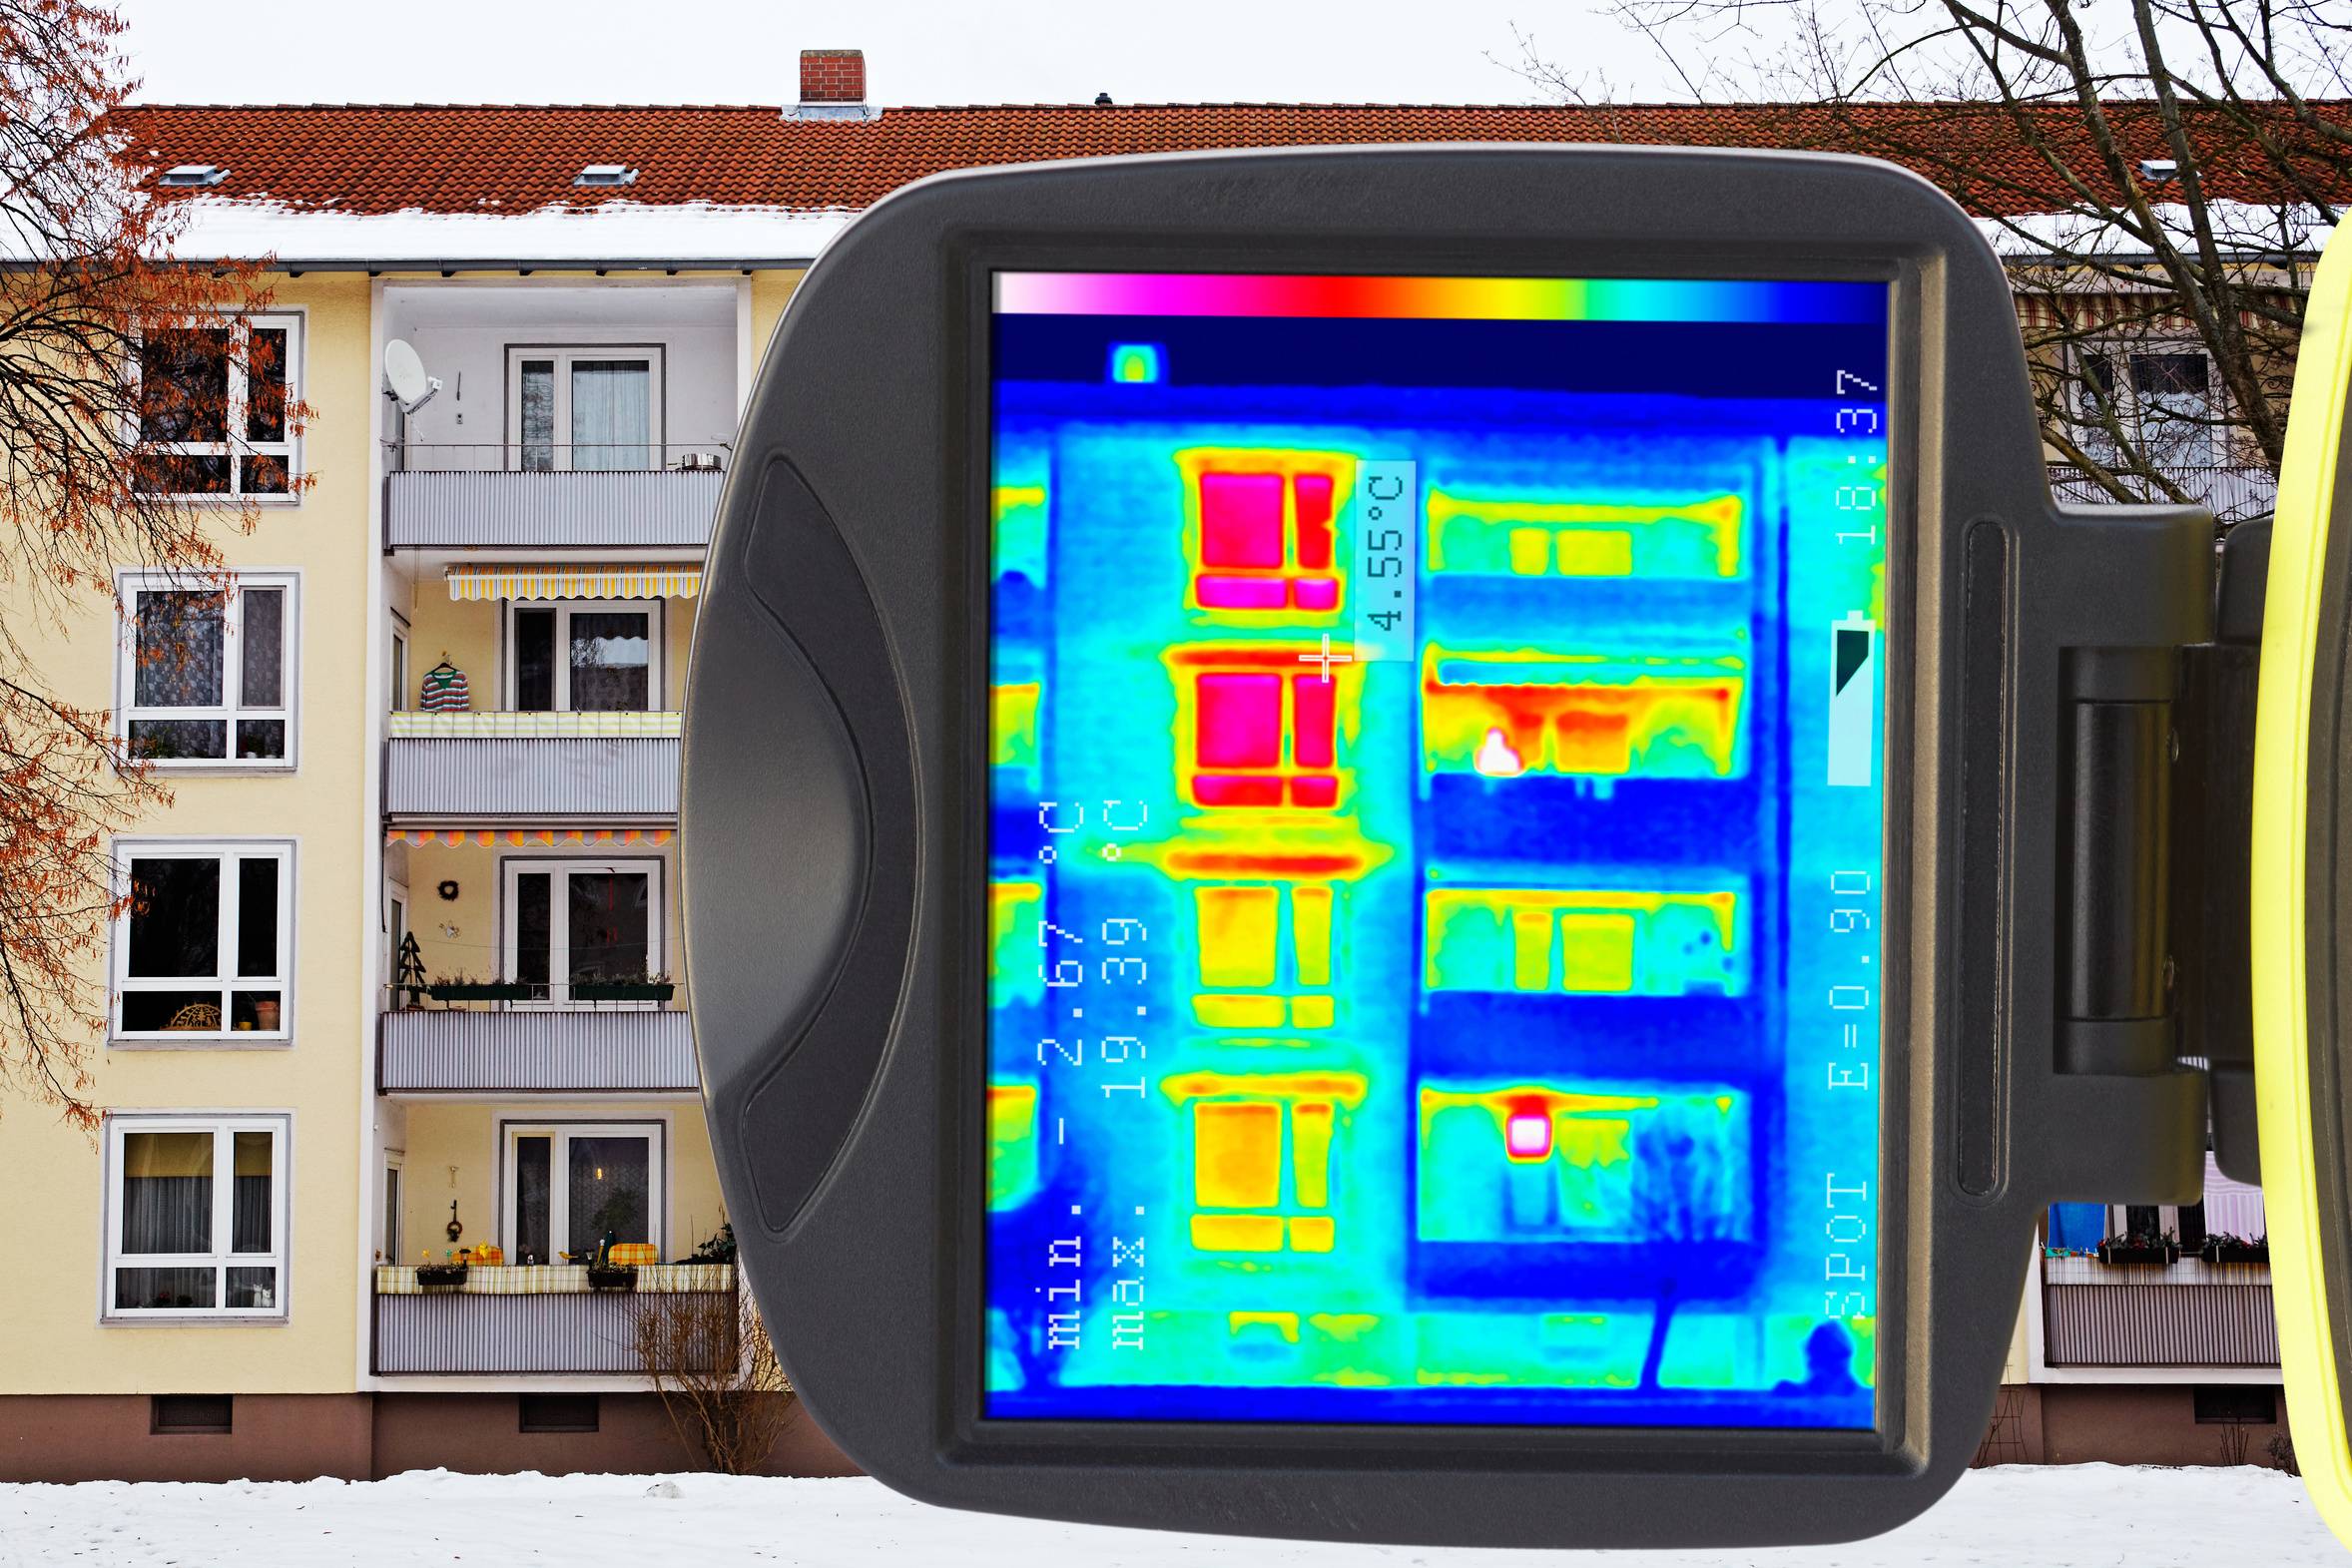 Изучаем прибор: для чего нужен, и как работает тепловизор для обследования зданий и сооружений